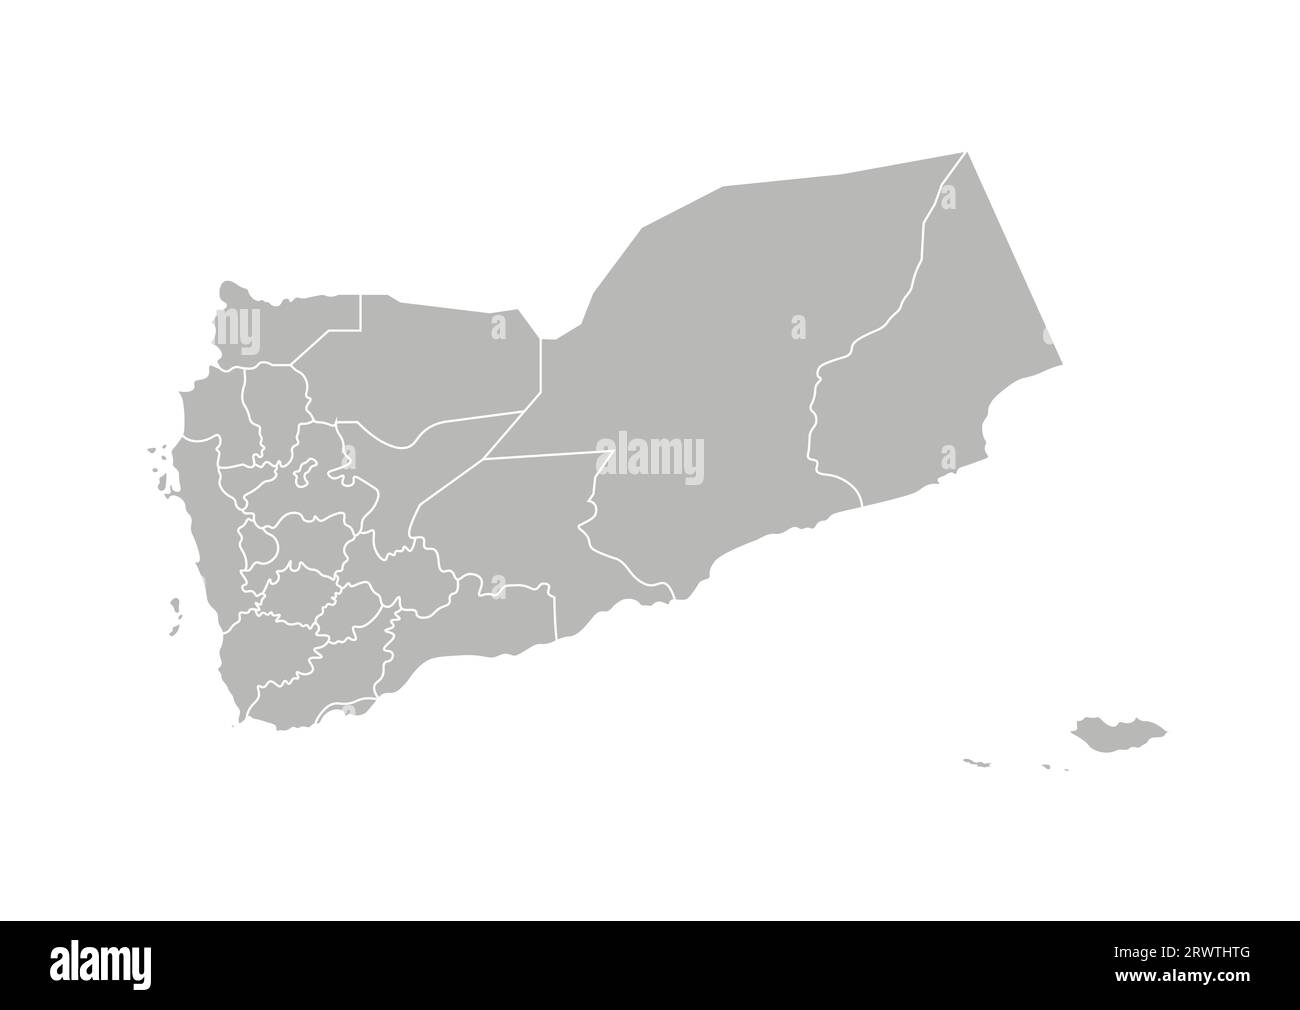 Vektorisolierte Darstellung einer vereinfachten Verwaltungskarte Jemens. Grenzen der Provinzregionen (Gouvernements). Graue Silhouetten. Weiße Omelettes Stock Vektor